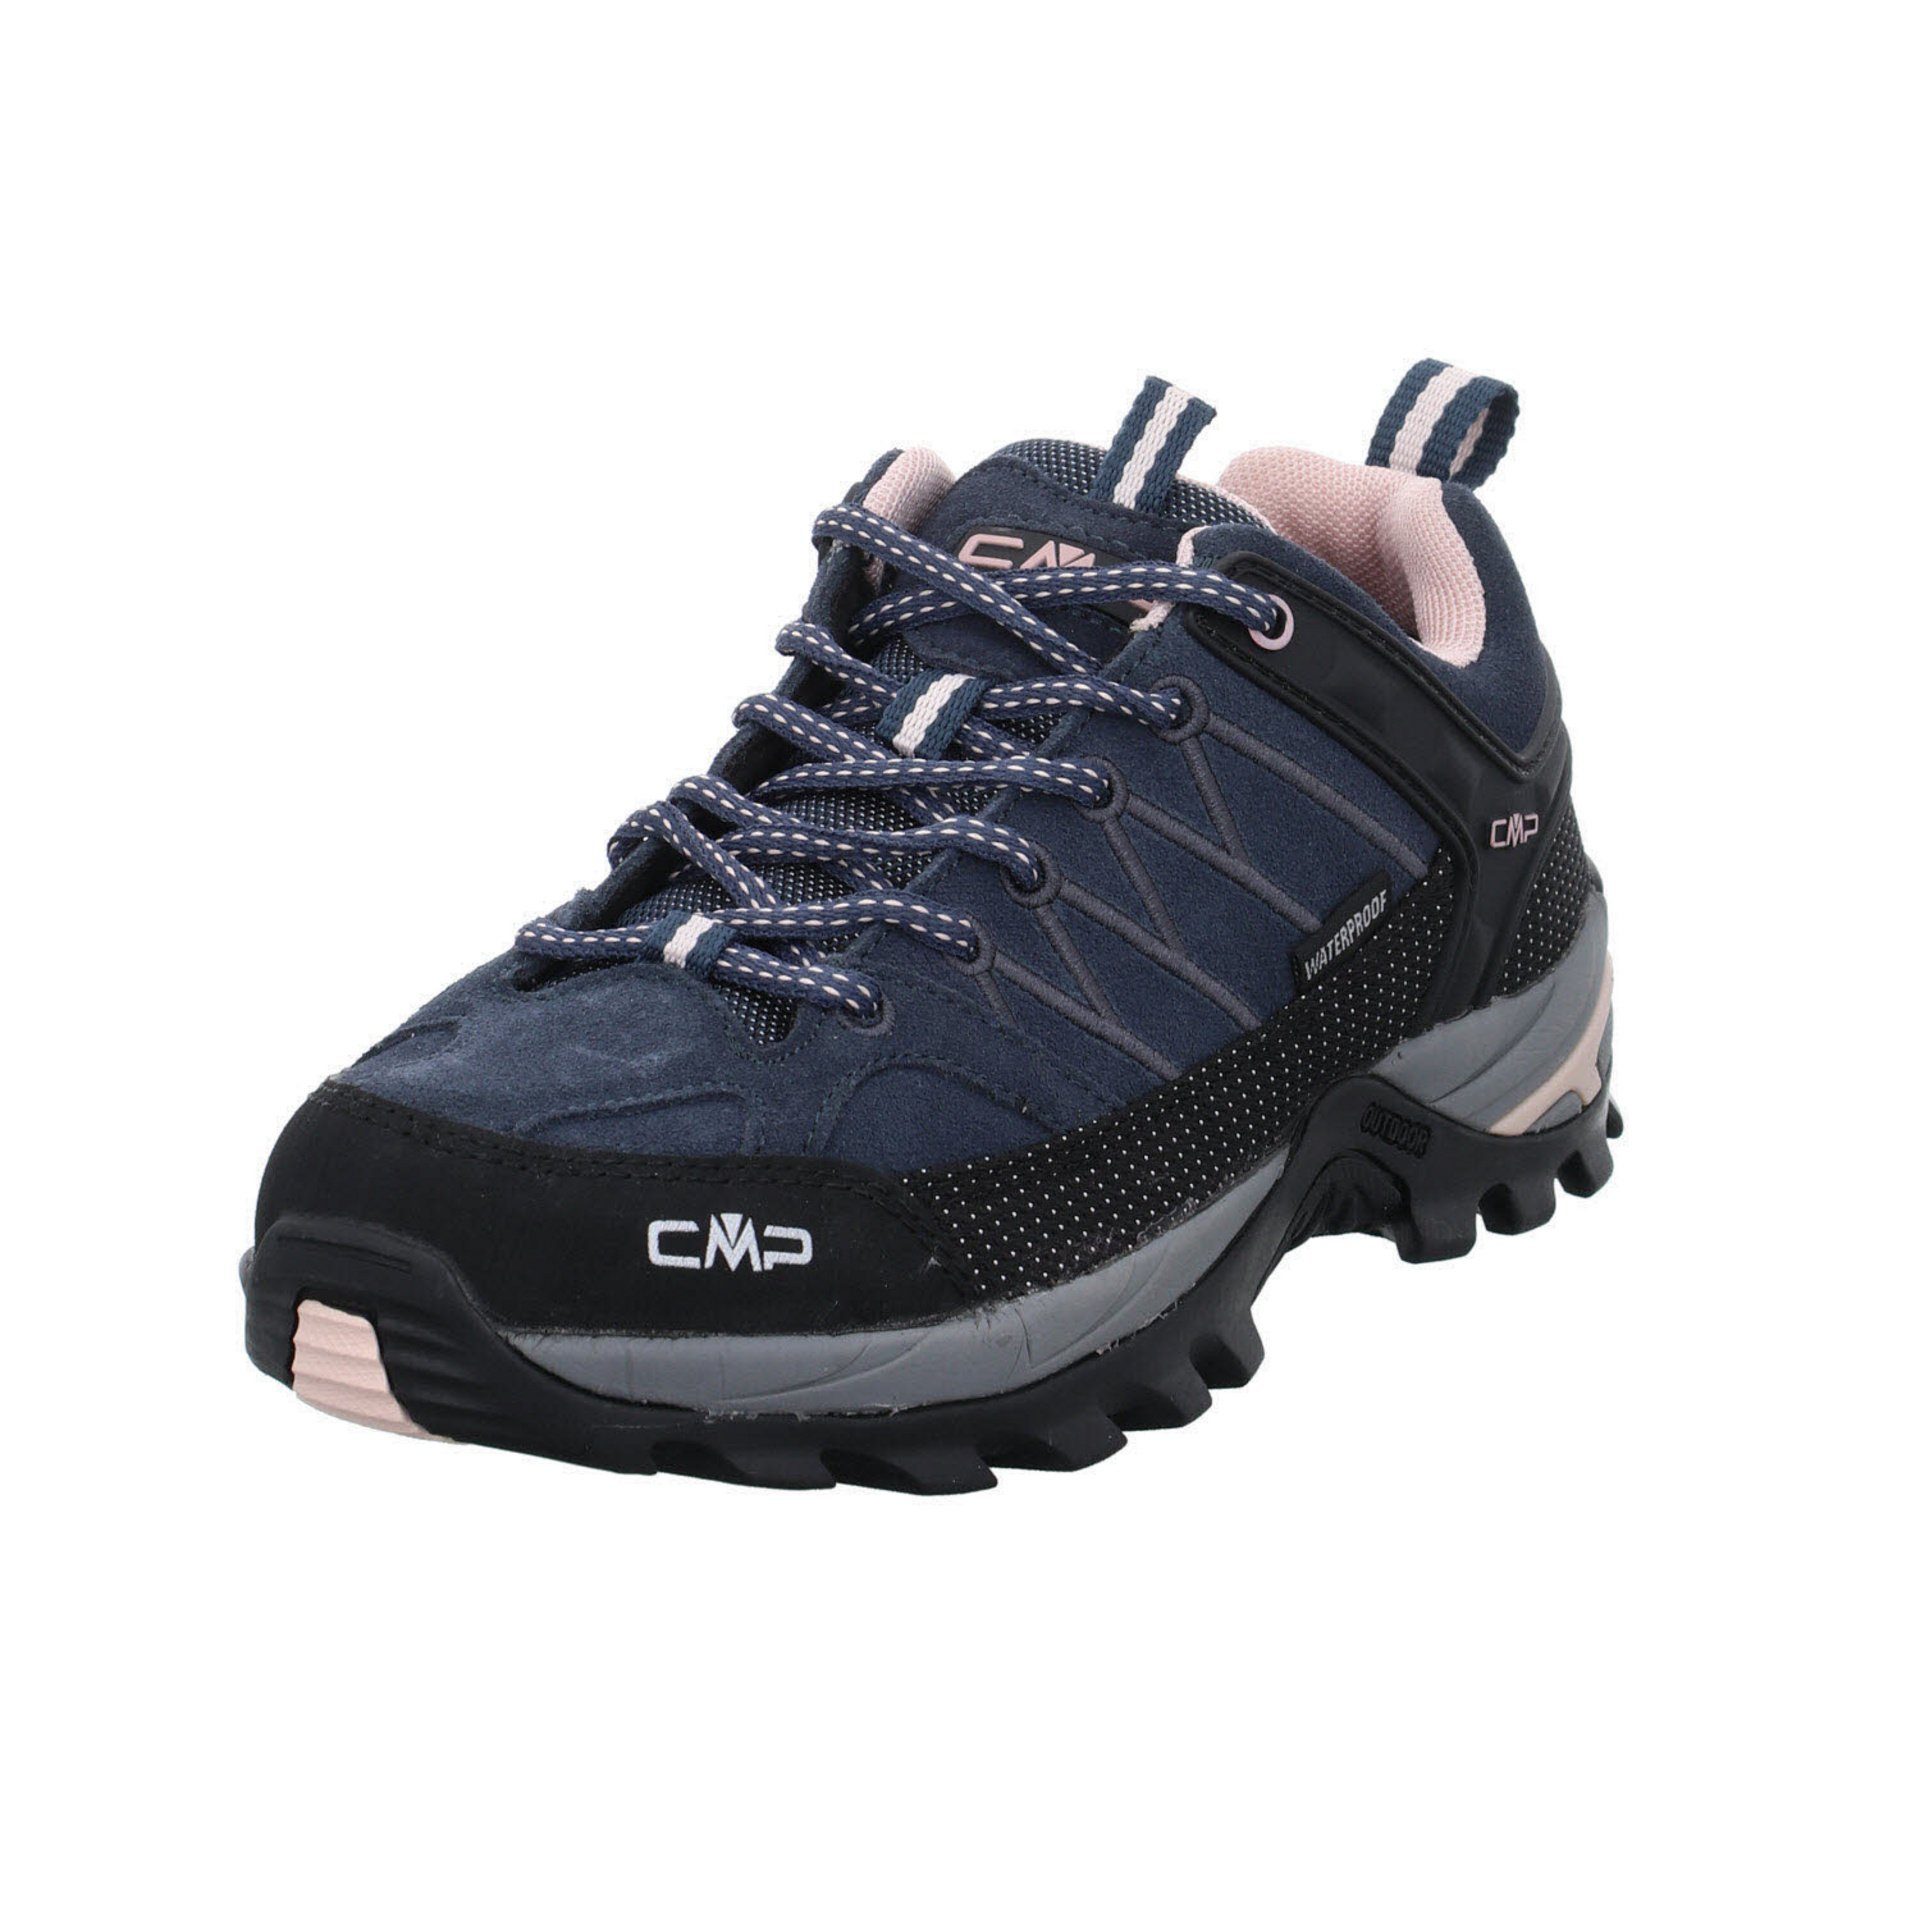 CMP Damen Schuhe Outdoor Riegel Low Outdoorschuh Outdoorschuh Leder-/Textilkombination anthrazit (201)